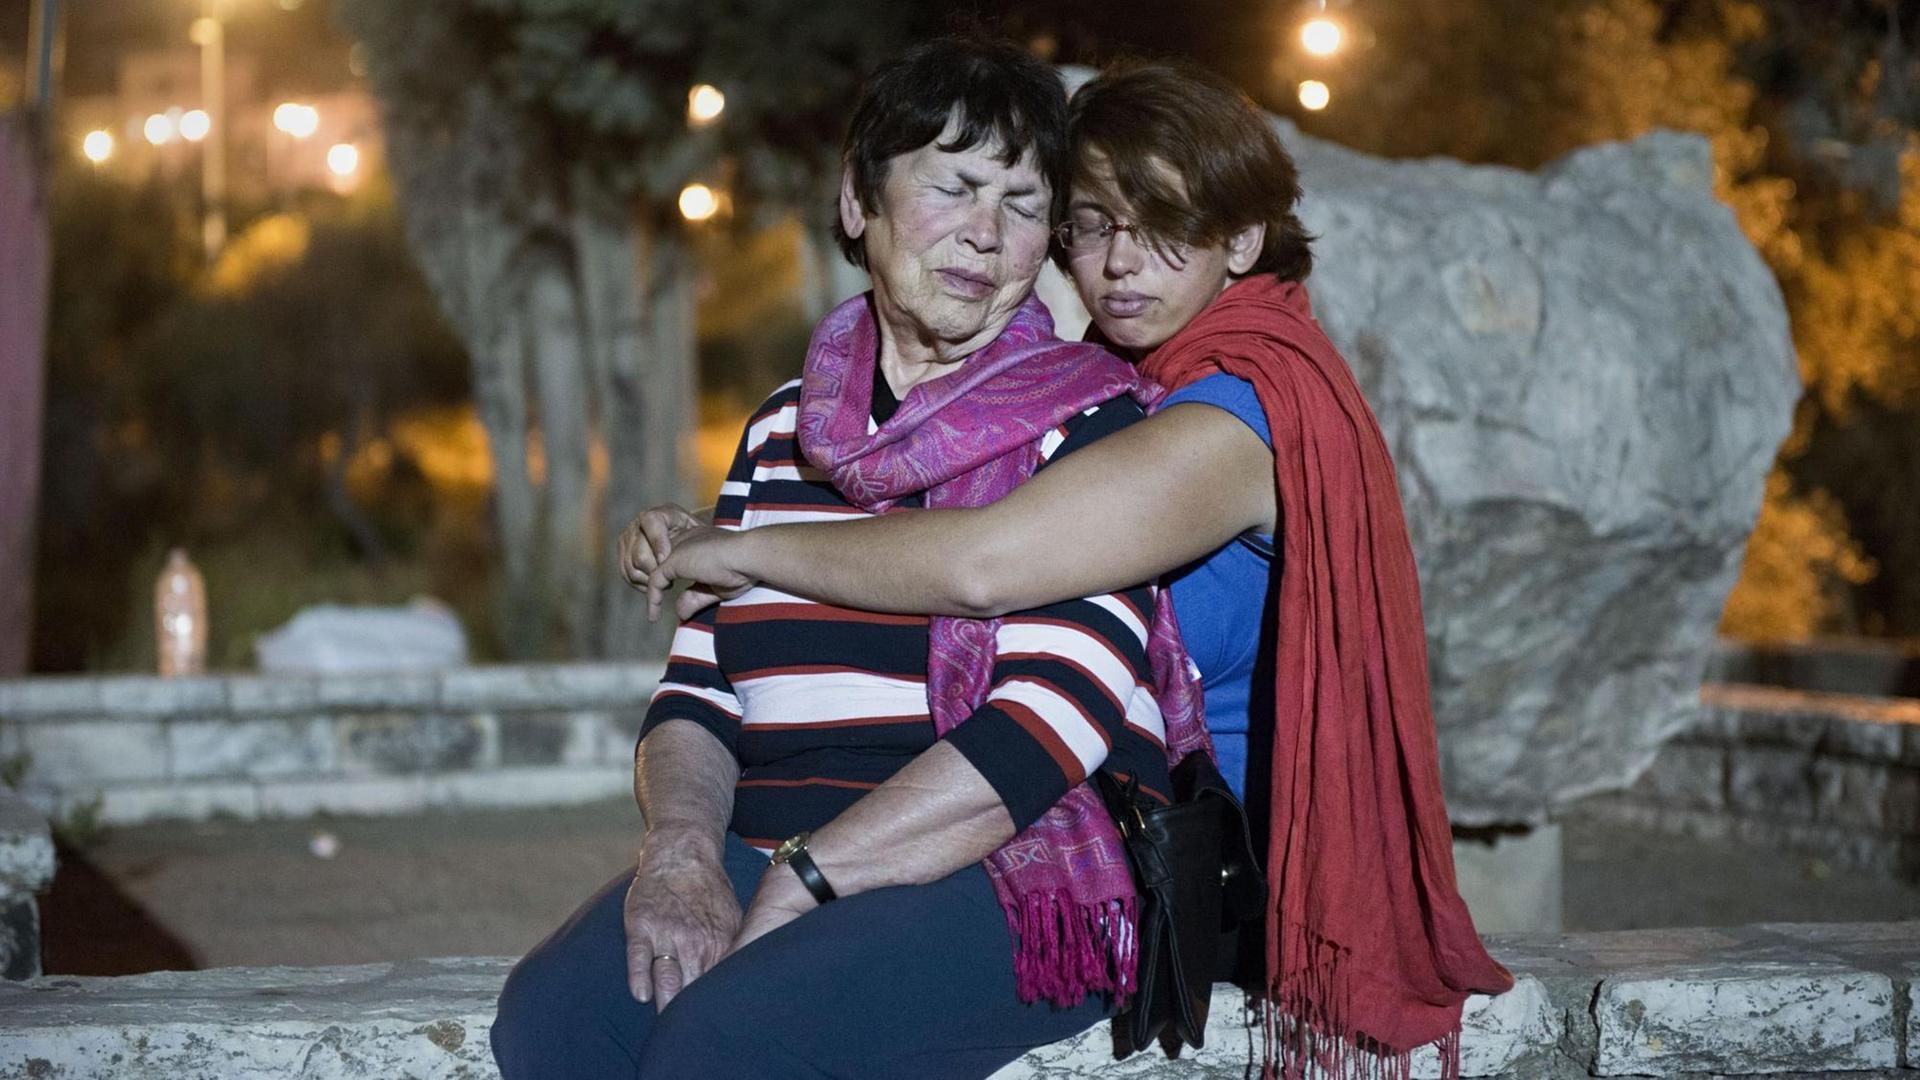 Holocaustueberlebende Pnina Katzir wird von ihrer Enkelin Yael im Sitzen umarmt, beide haben die Augen geschlossen. Jerusalem